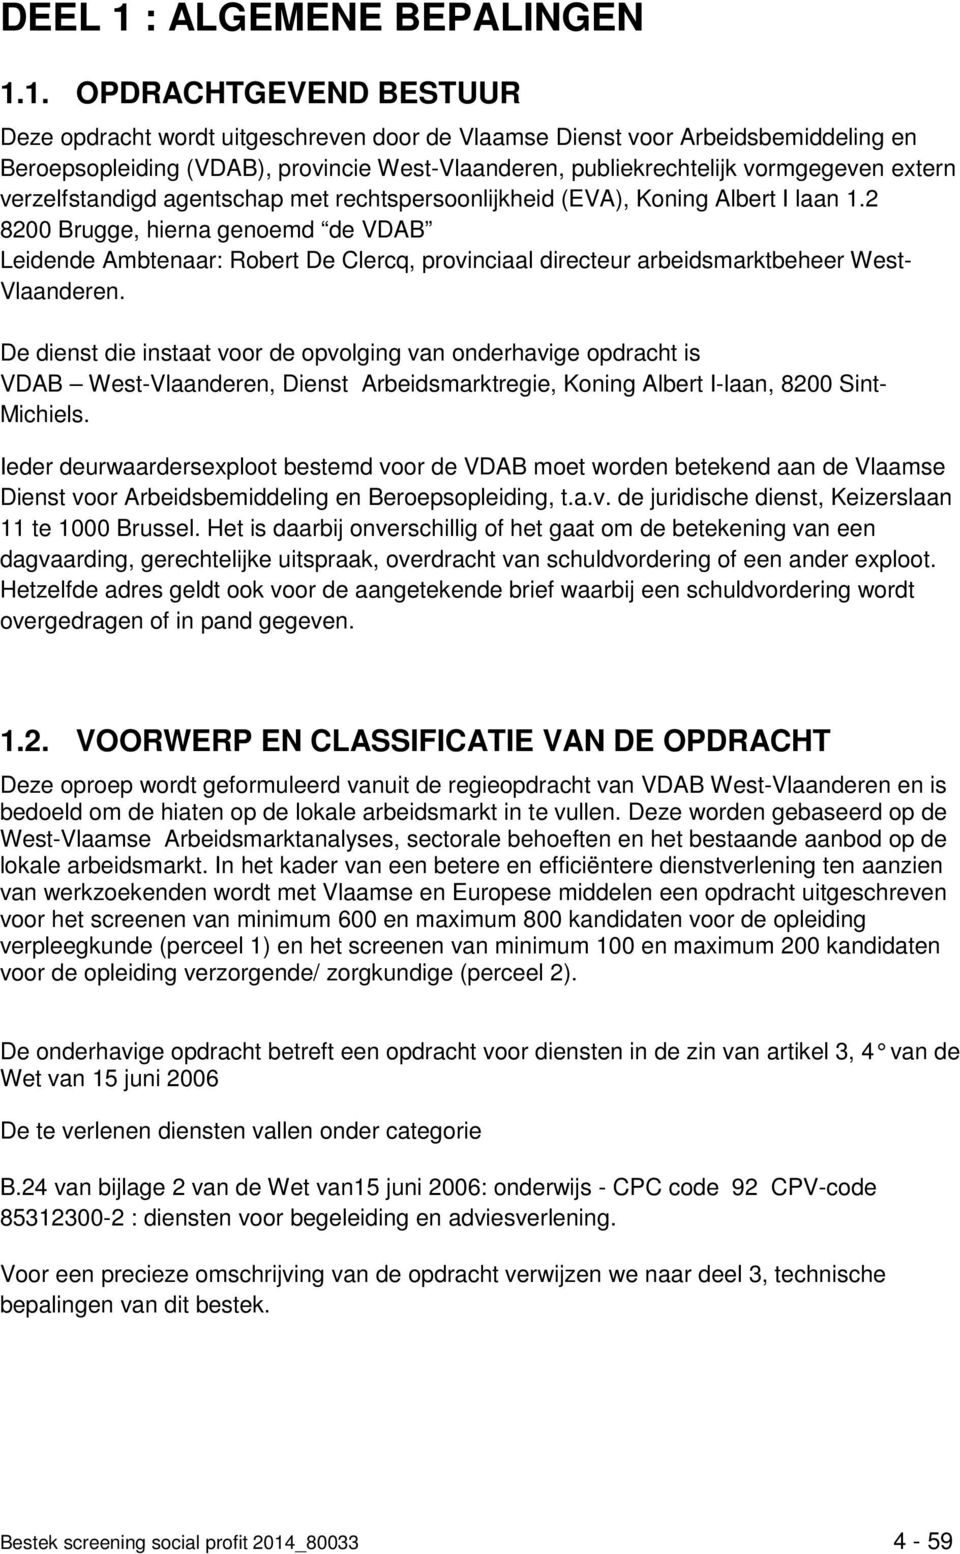 1. OPDRACHTGEVEND BESTUUR Deze opdracht wordt uitgeschreven door de Vlaamse Dienst voor Arbeidsbemiddeling en Beroepsopleiding (VDAB), provincie West-Vlaanderen, publiekrechtelijk vormgegeven extern